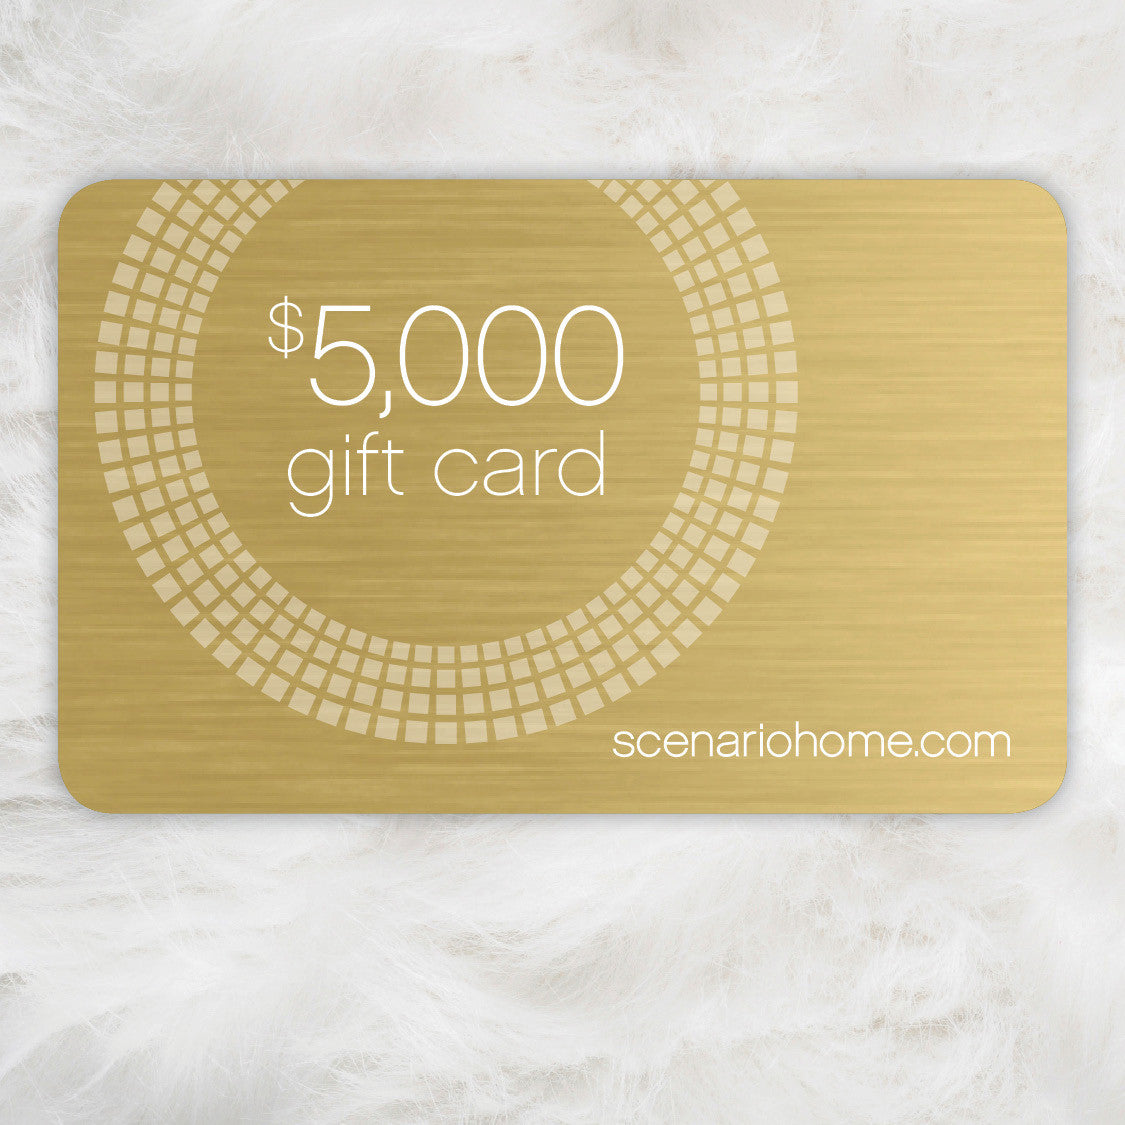 $5000 Scenario Home e-Gift Card